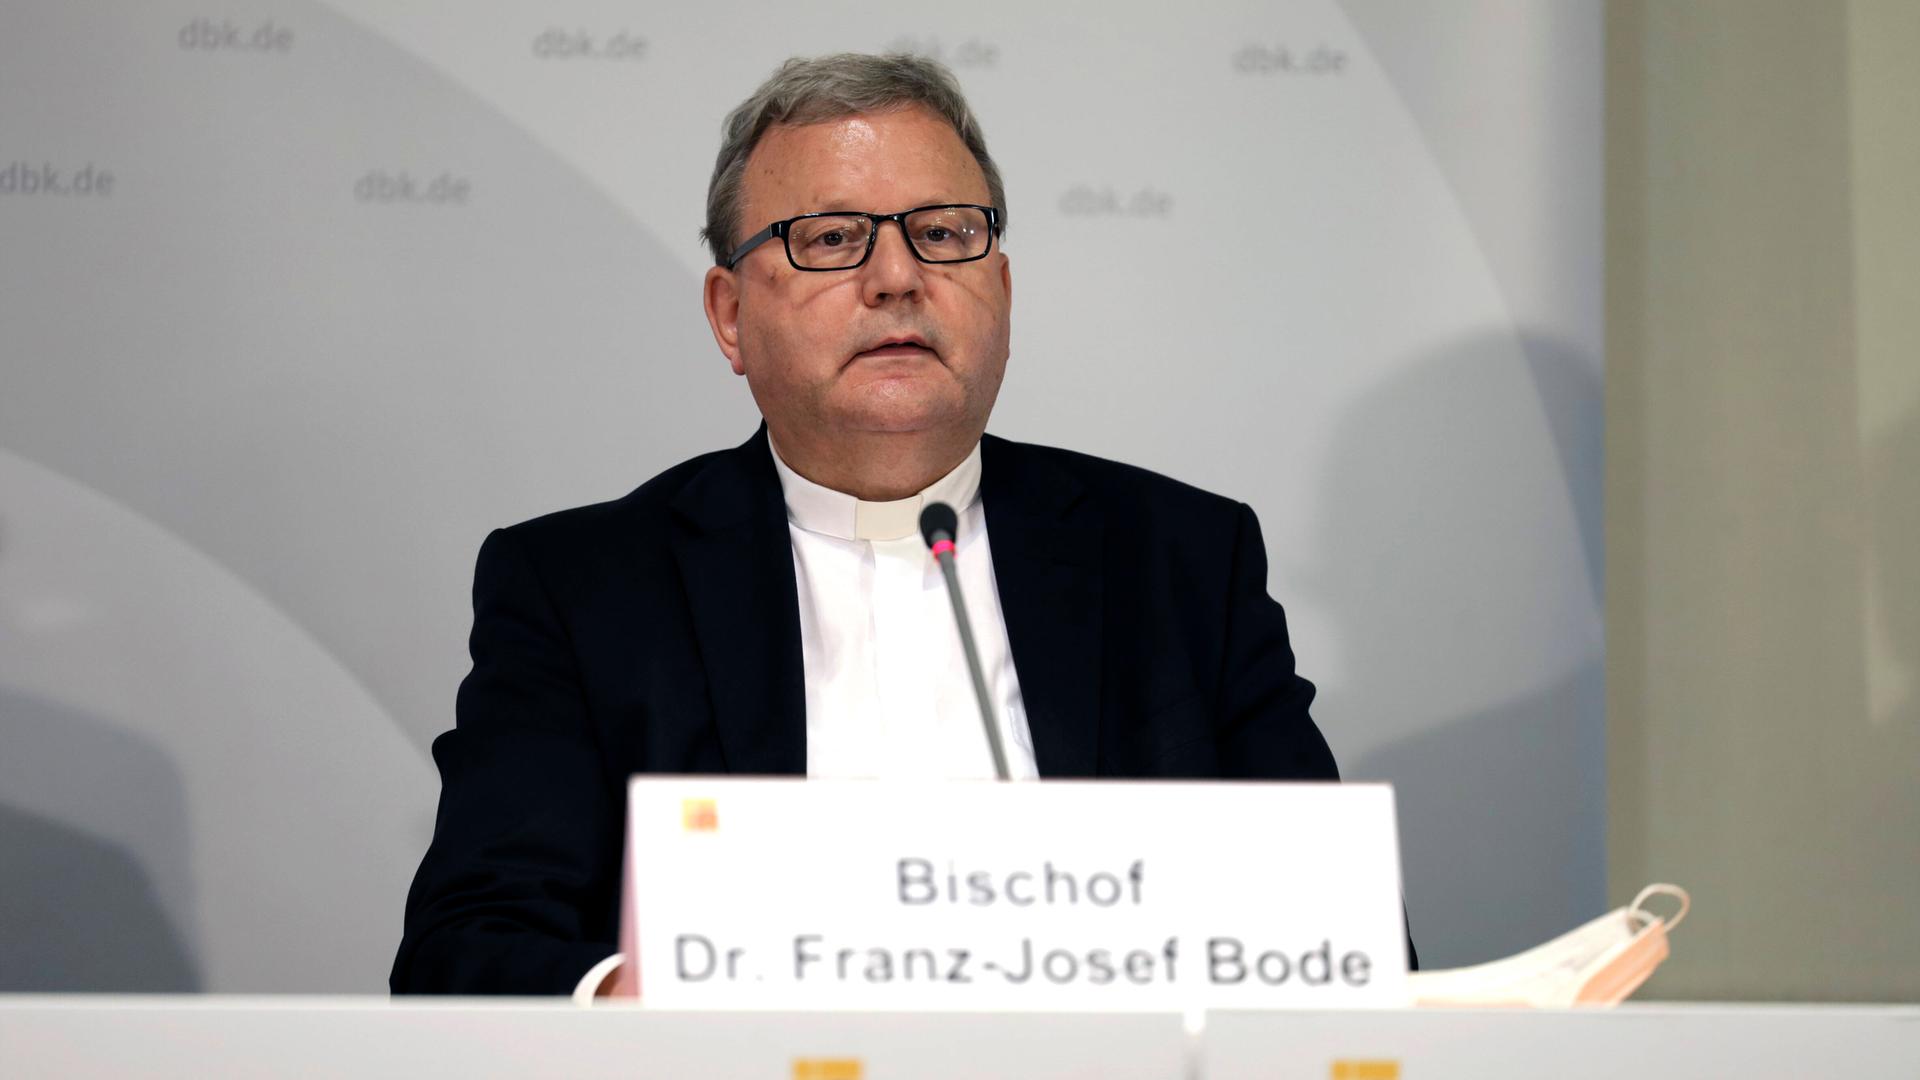 Bischof Franz-Josef Bode hört aufmerksam zu bei einer Sitzung der Deutschen Bischofskonferenz.